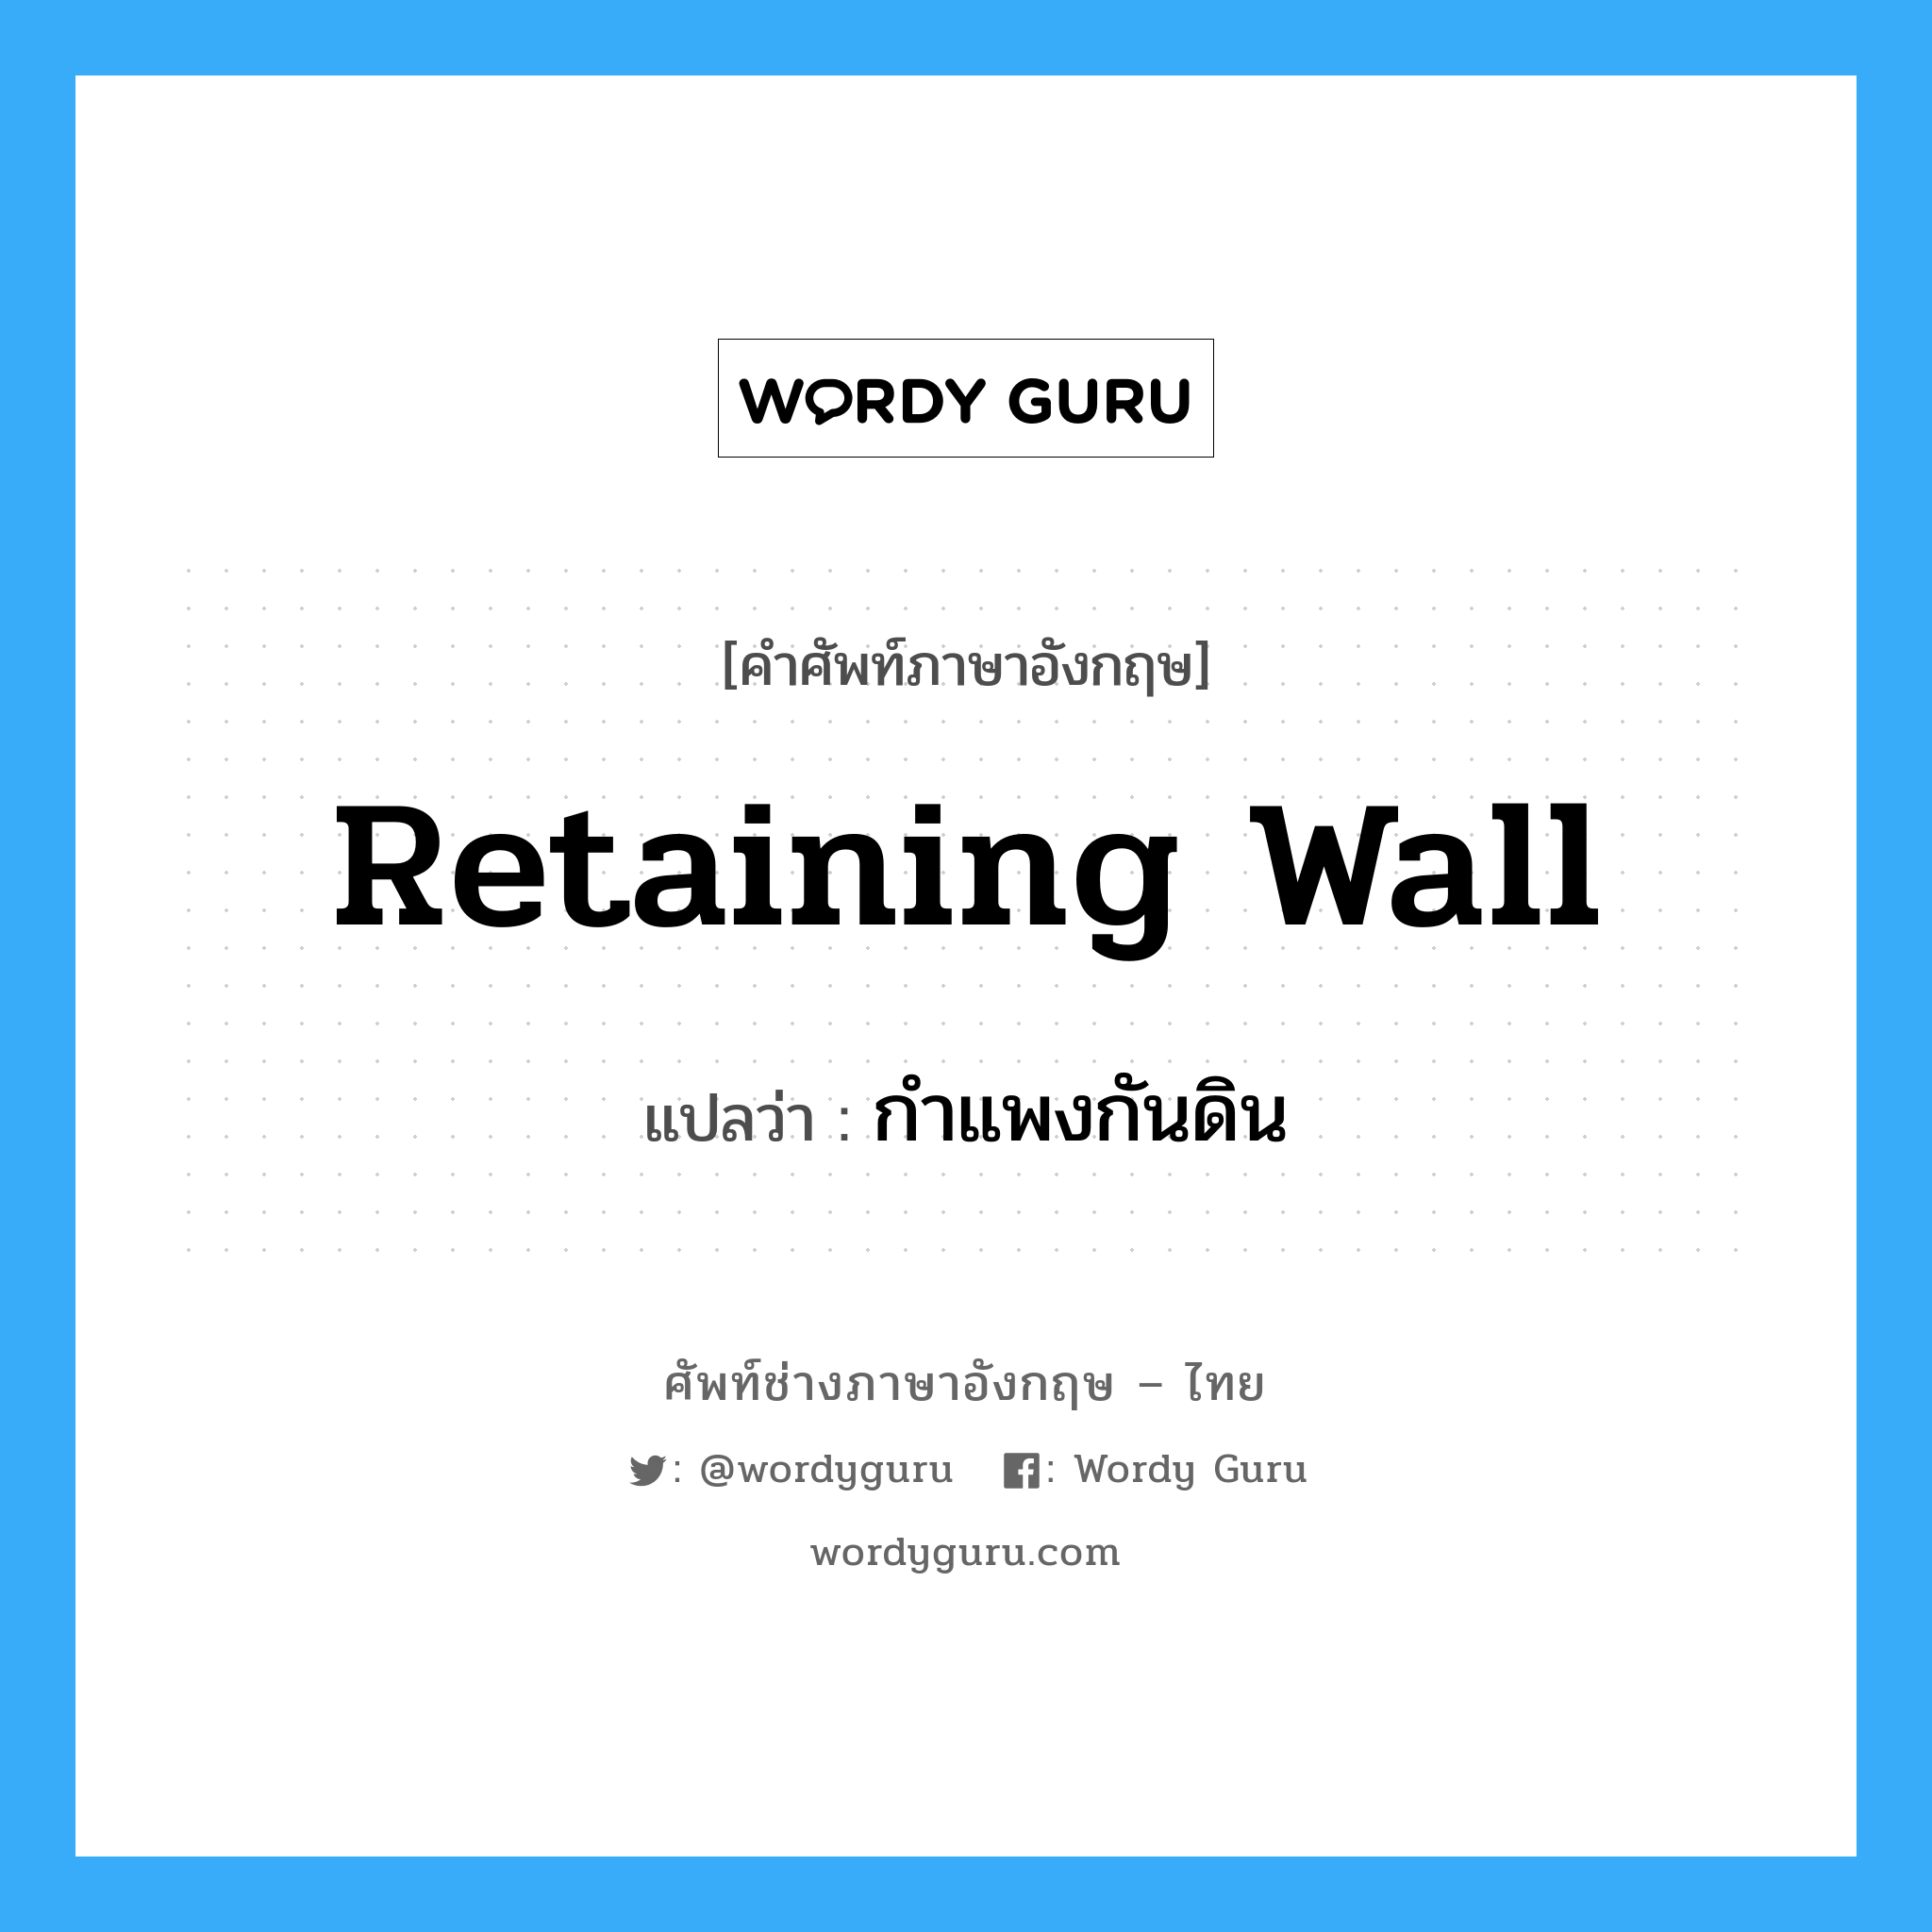 กำแพงกันดิน ภาษาอังกฤษ?, คำศัพท์ช่างภาษาอังกฤษ - ไทย กำแพงกันดิน คำศัพท์ภาษาอังกฤษ กำแพงกันดิน แปลว่า retaining wall